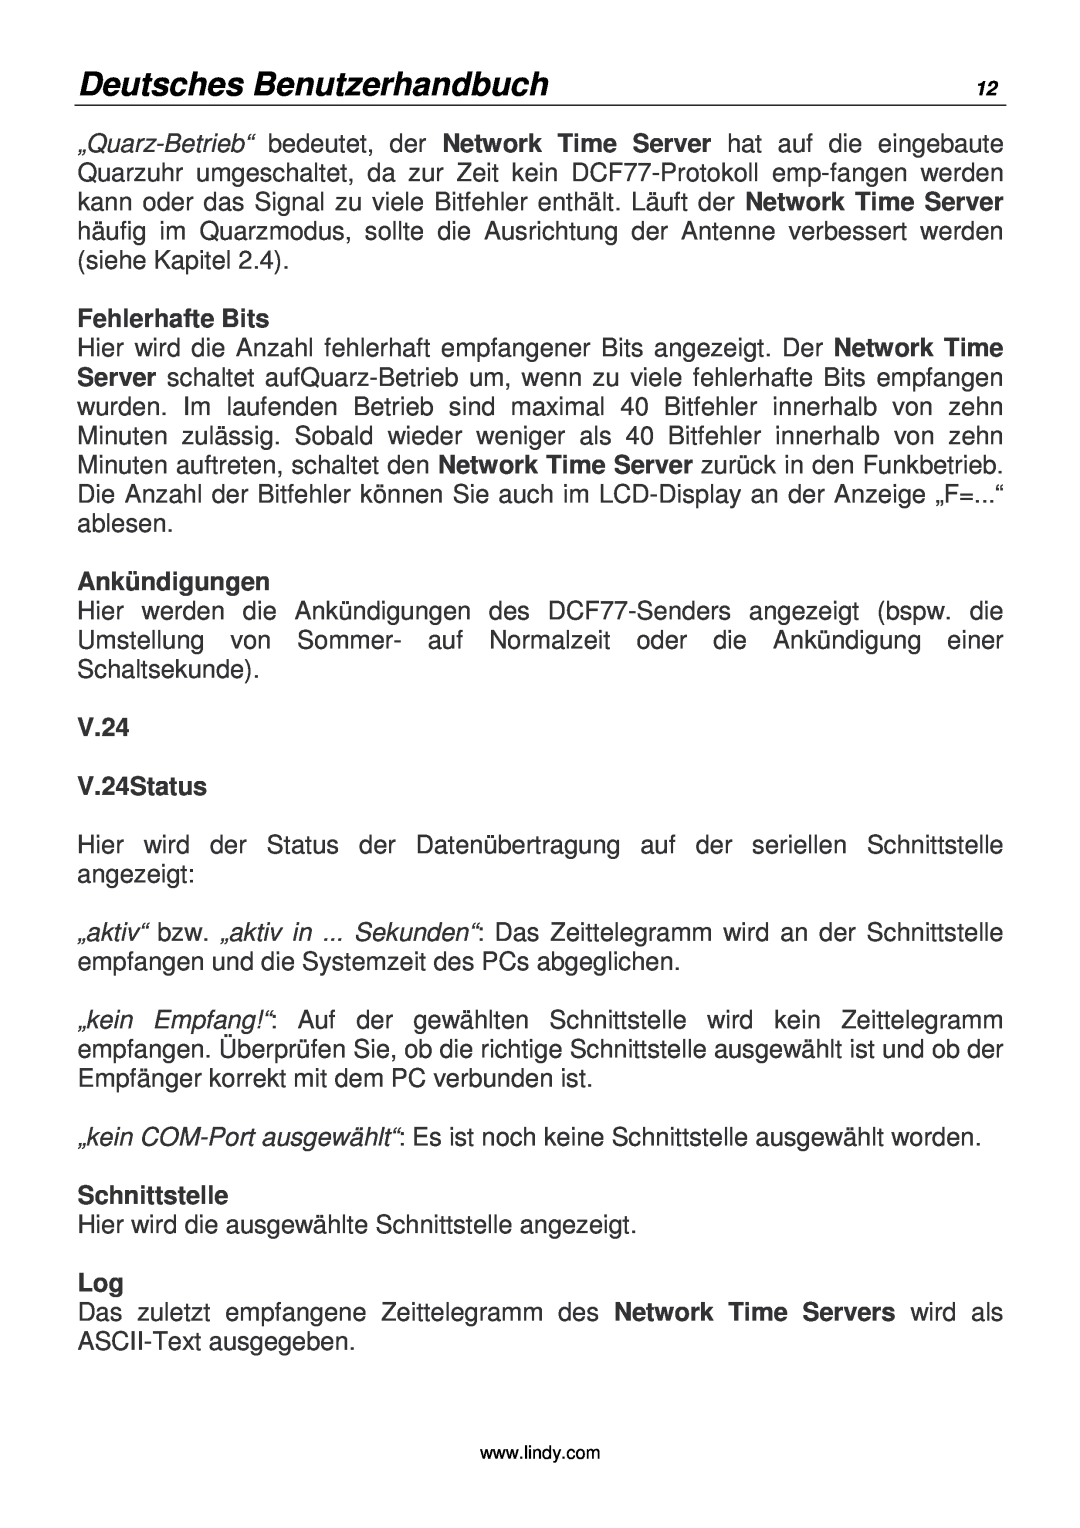 Lindy 20988 manual Deutsches Benutzerhandbuch, Fehlerhafte Bits, Ankündigungen, V.24 V.24Status, Schnittstelle 